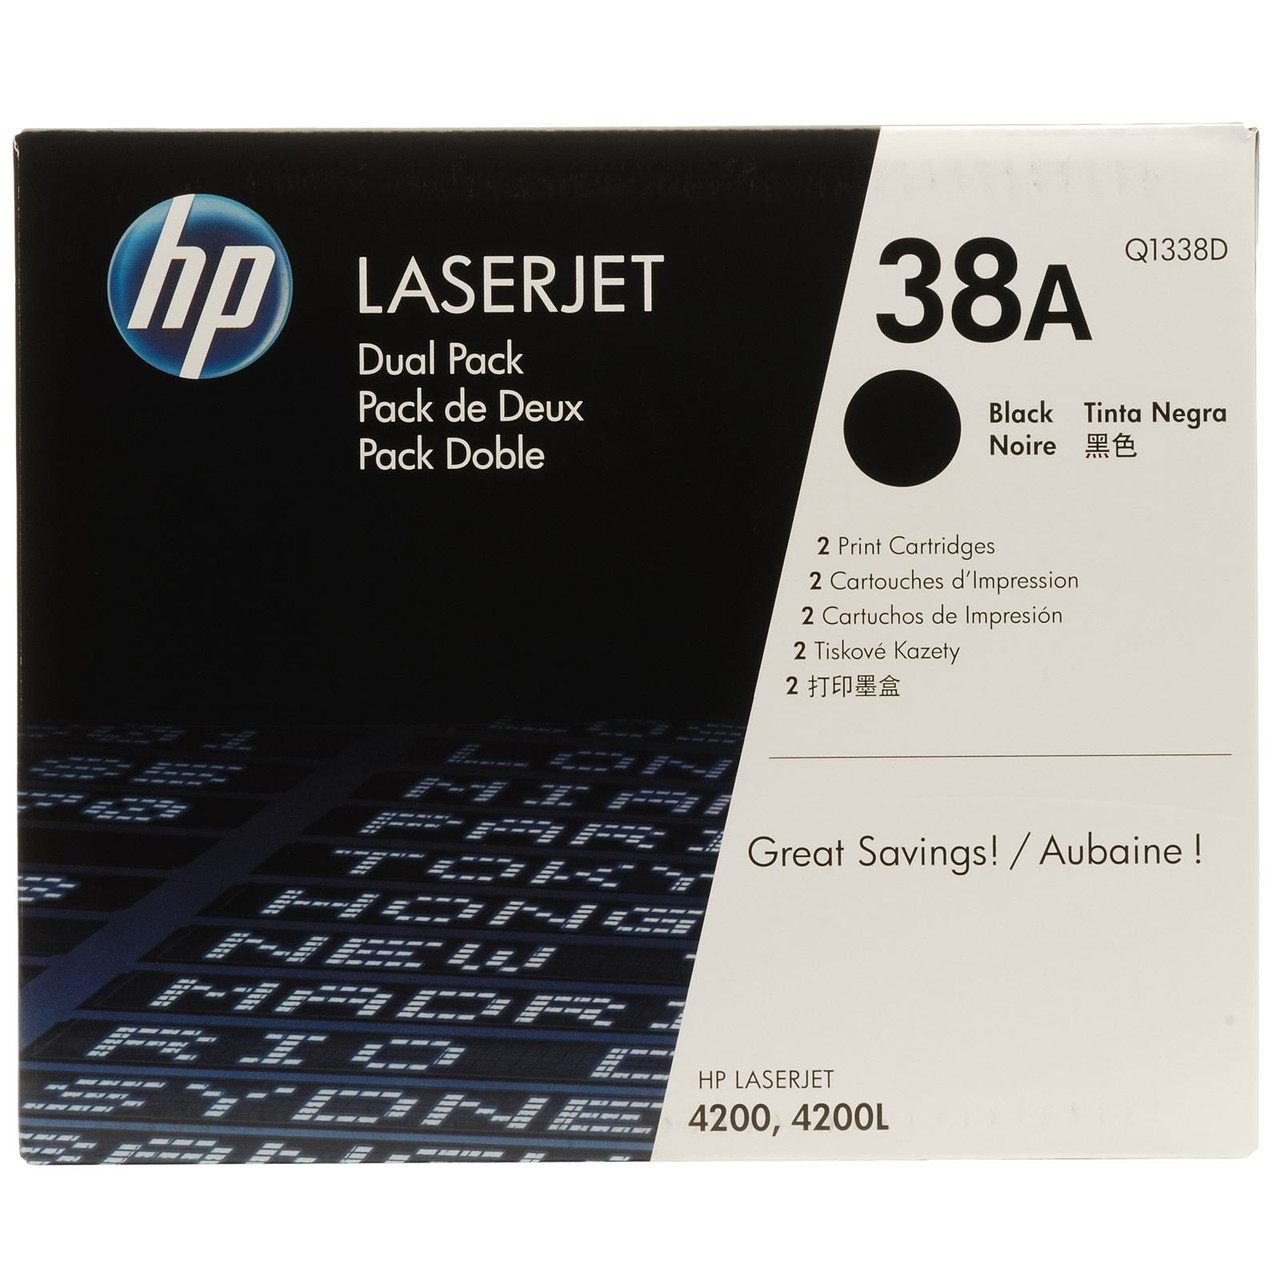 Картридж 38A/ Q1338A (для HP LaserJet 4200)